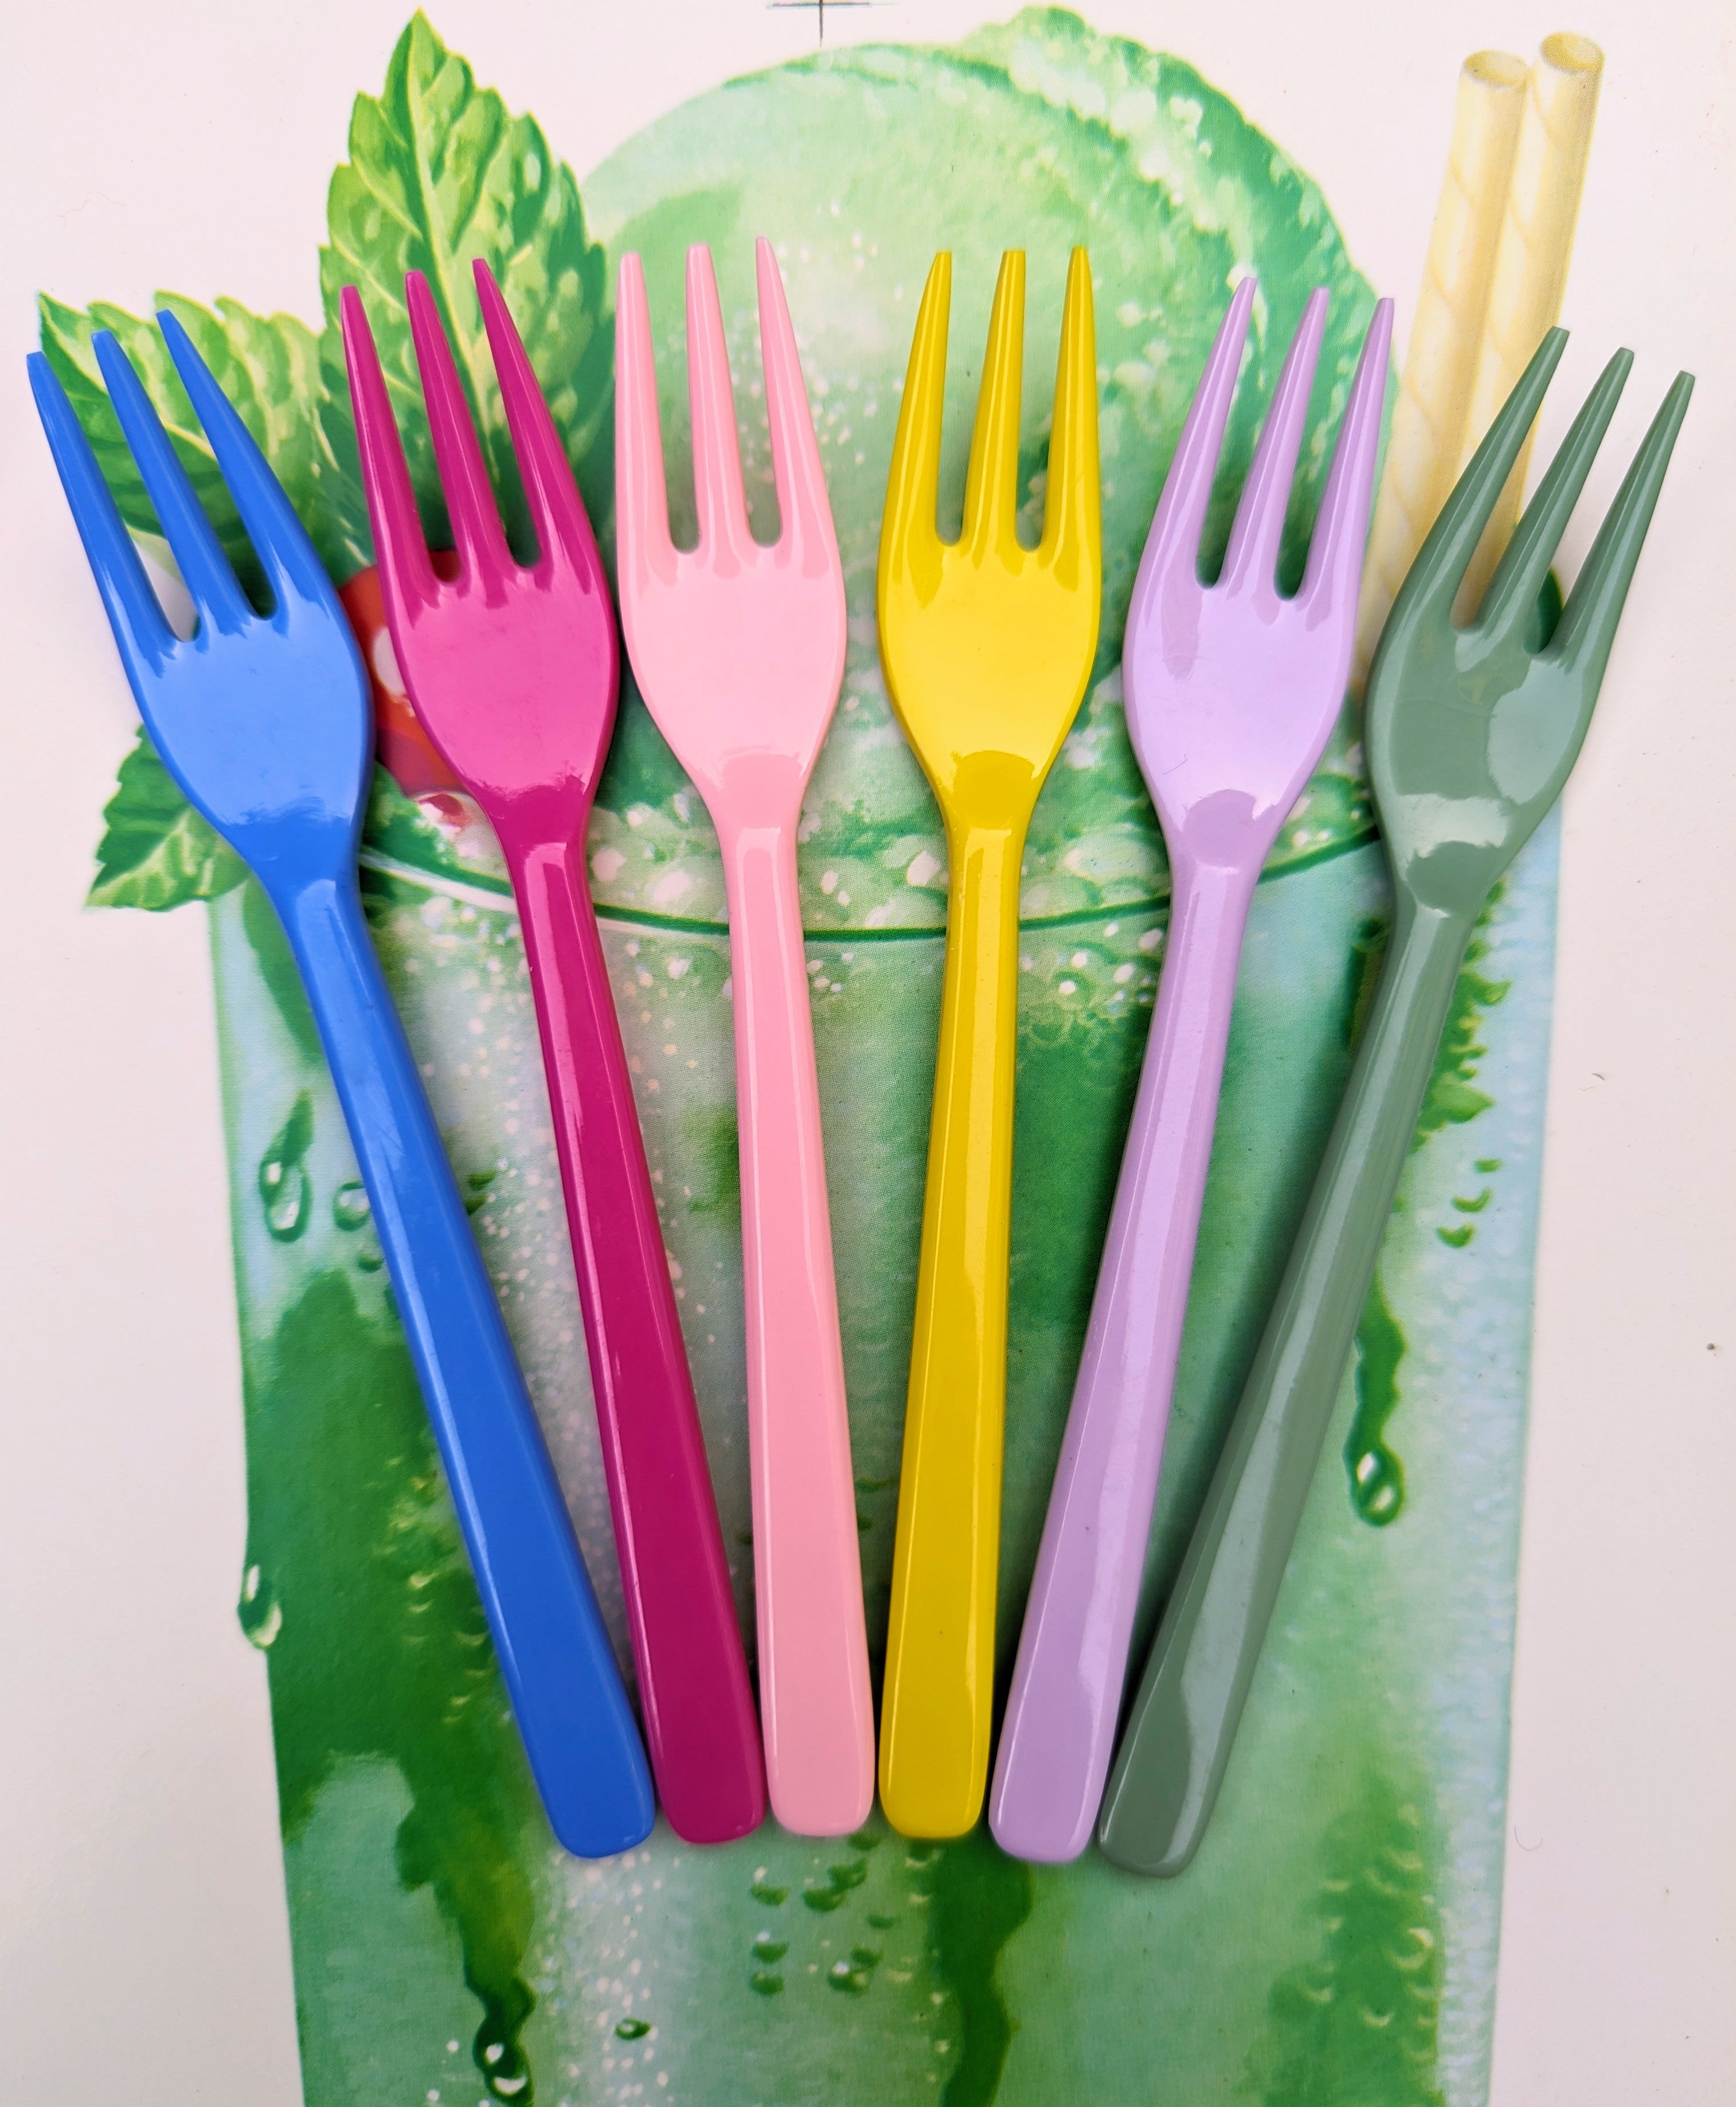 Forks set of 6